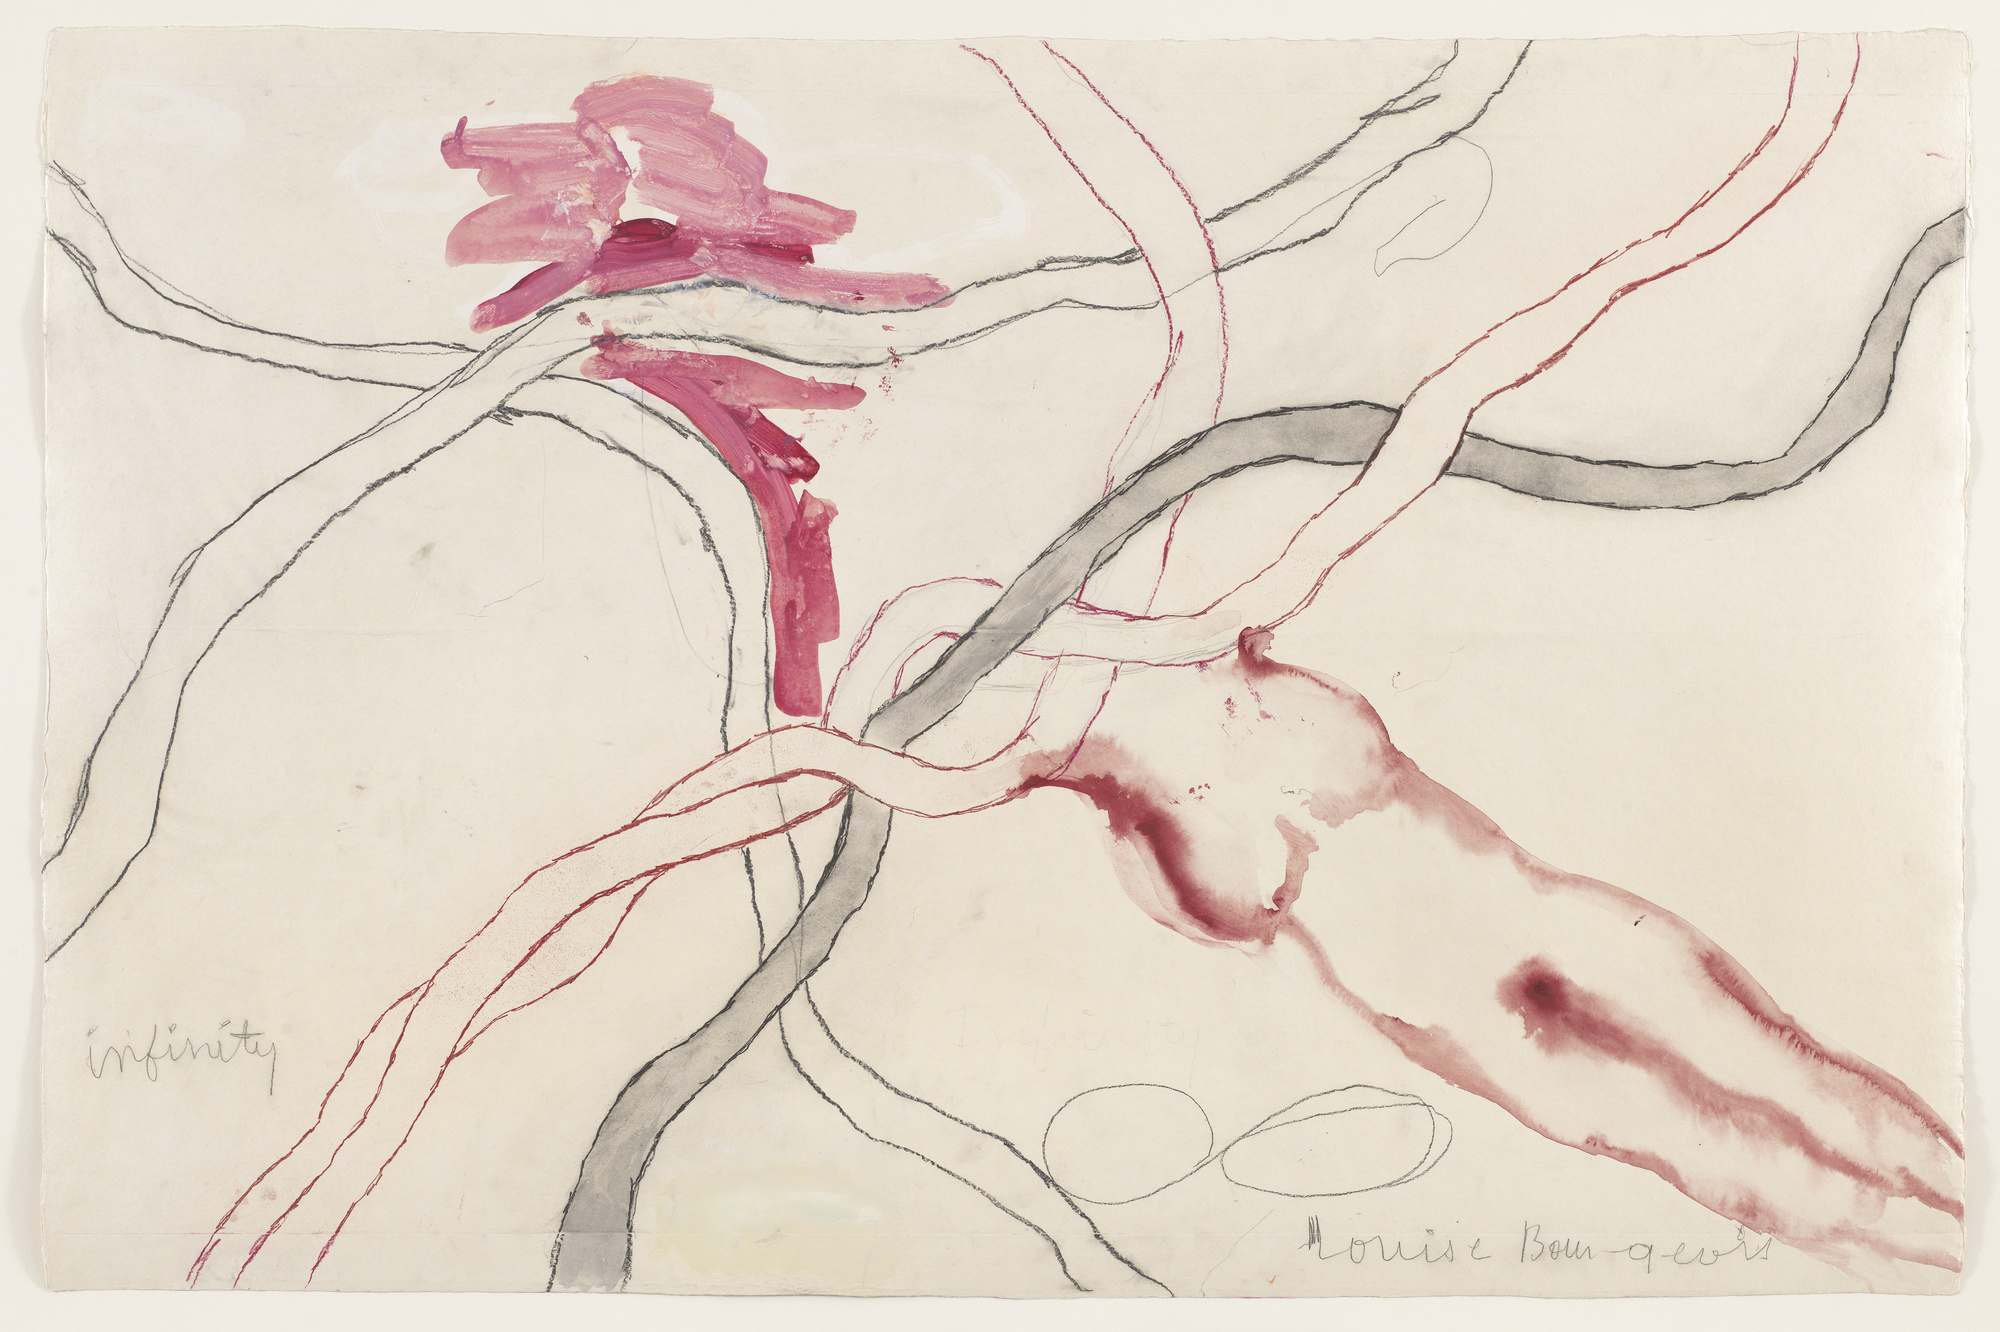 Louise Bourgeois: An Unfolding Portrait — ART U Lens